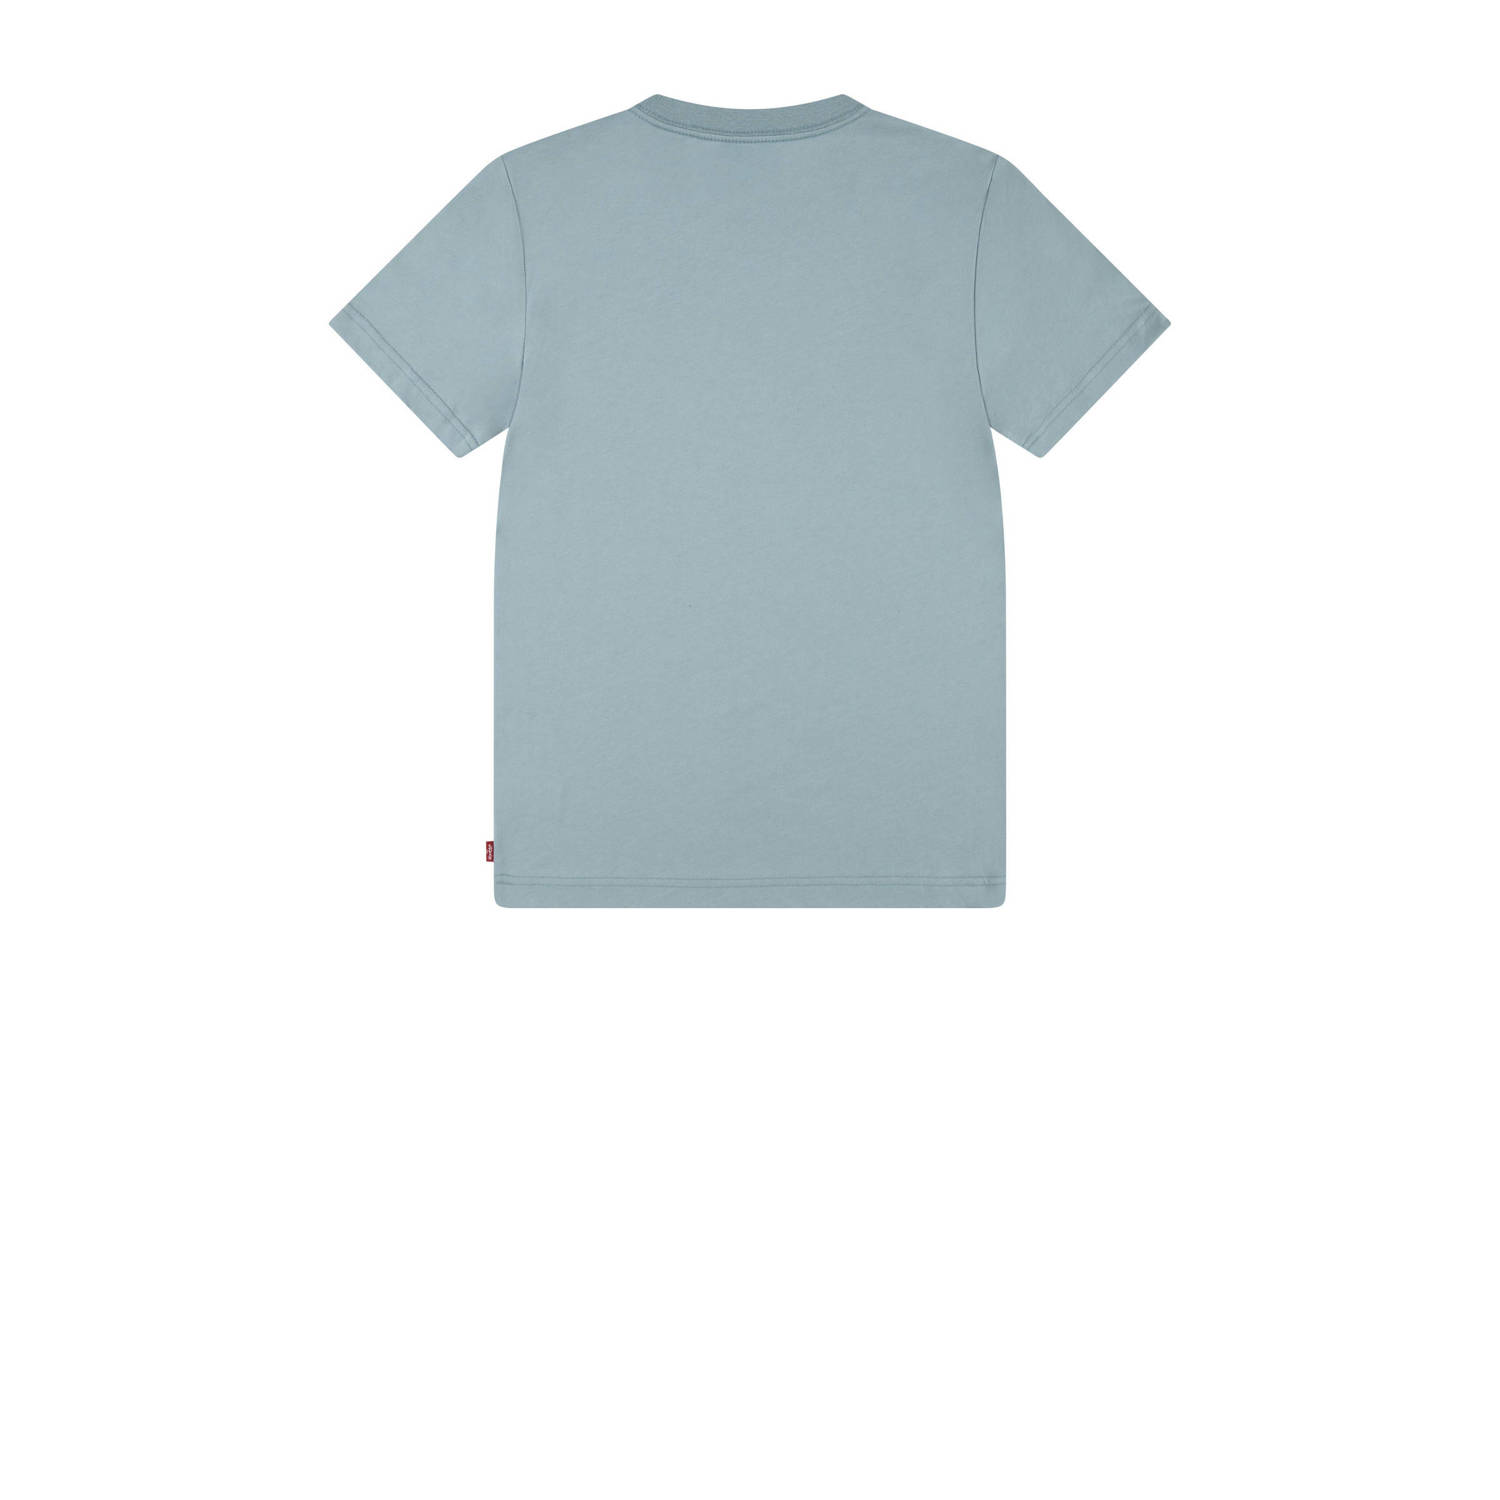 Levi's Kids T-shirt grijsblauw